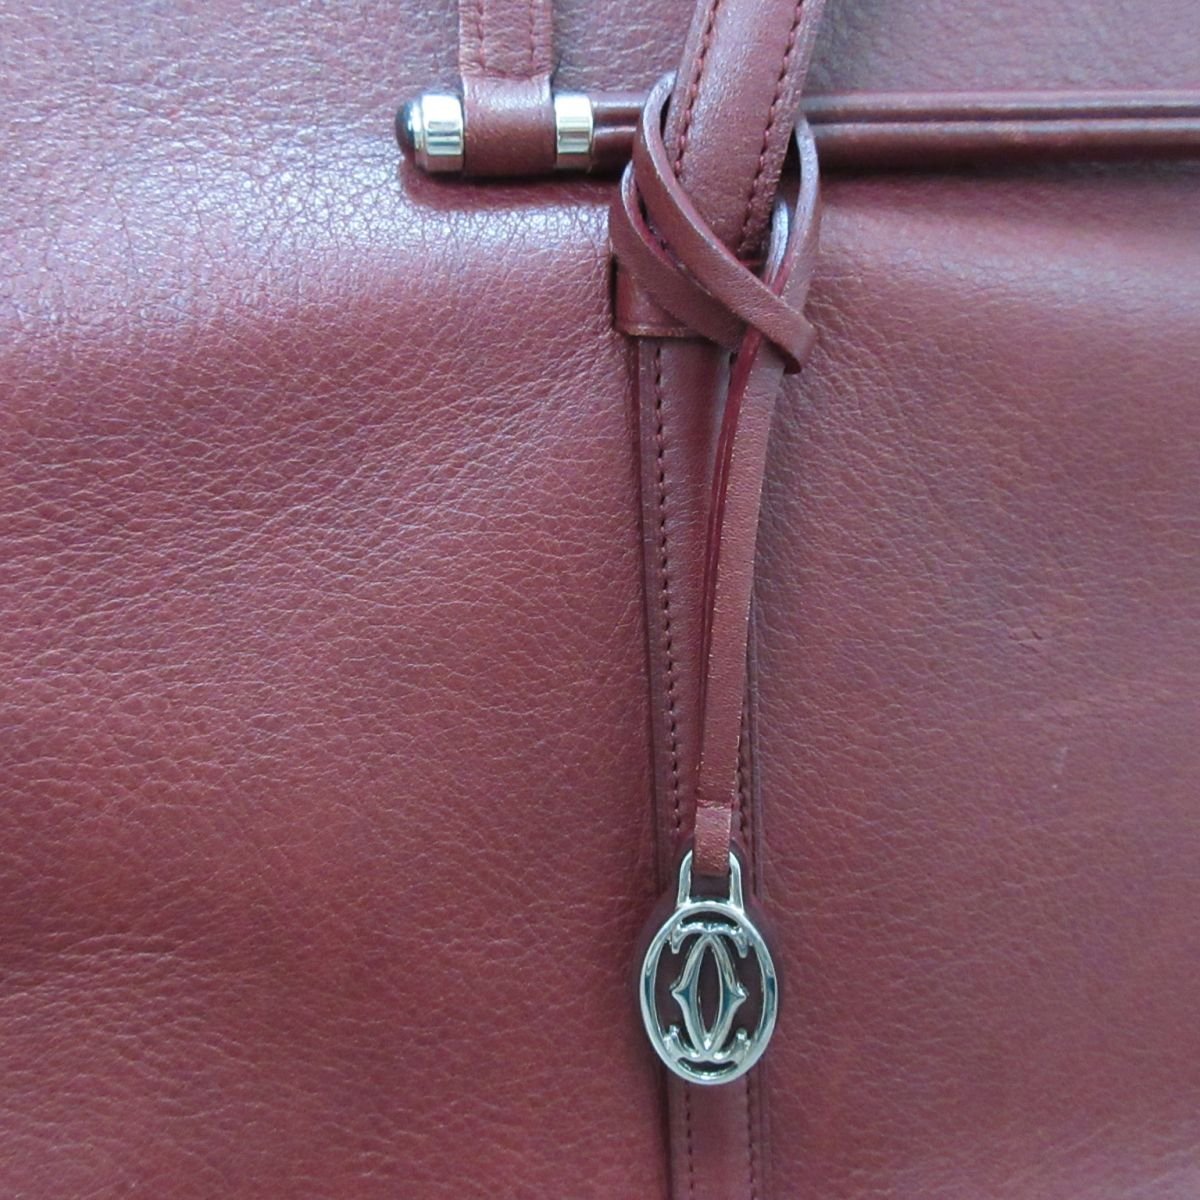  хорошая вещь Cartier Cartier kaboshon кожа большая сумка one сумка на плечо бордо × серебряный металлические принадлежности *